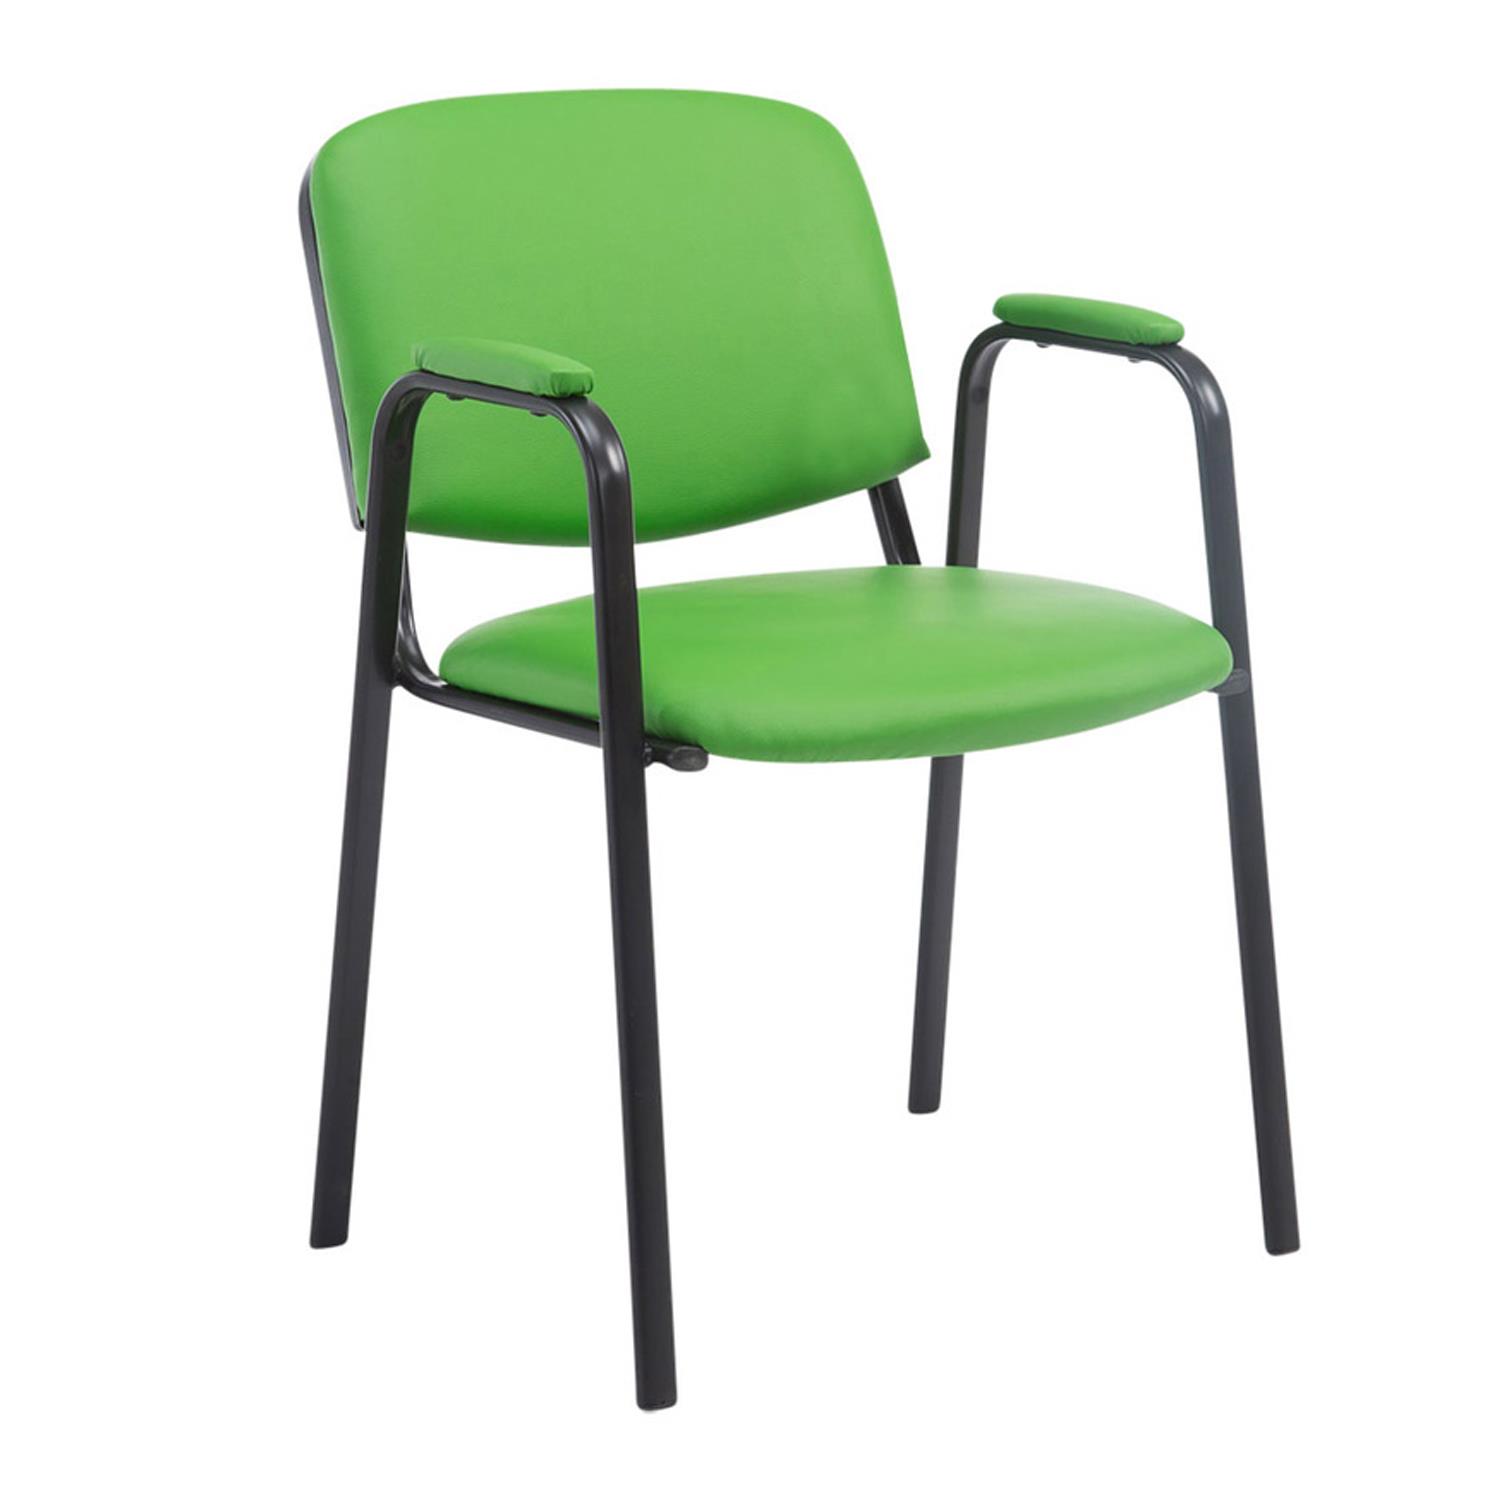 Cadeira de Visita MOBY PELE COM BRAÇOS, Conforto, Pernas Pretas, Cor Verde